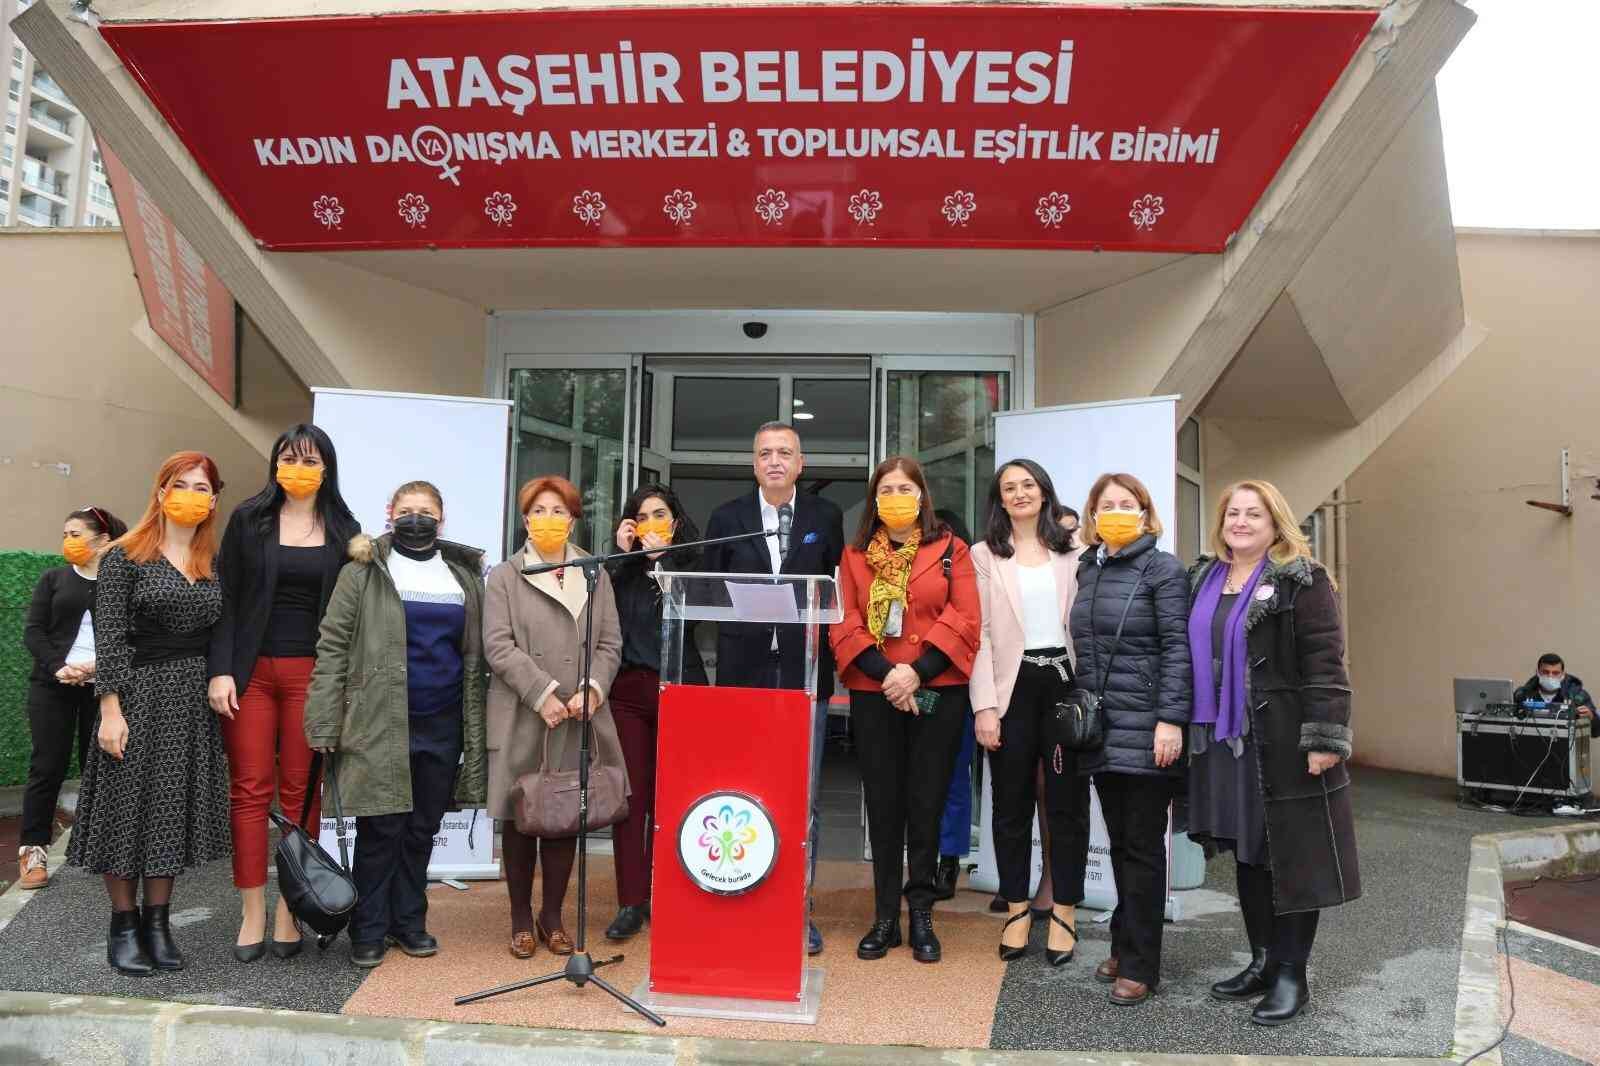 Ataşehir Belediyesi ’Kadın Dayanışma Merkezi’ açıldı